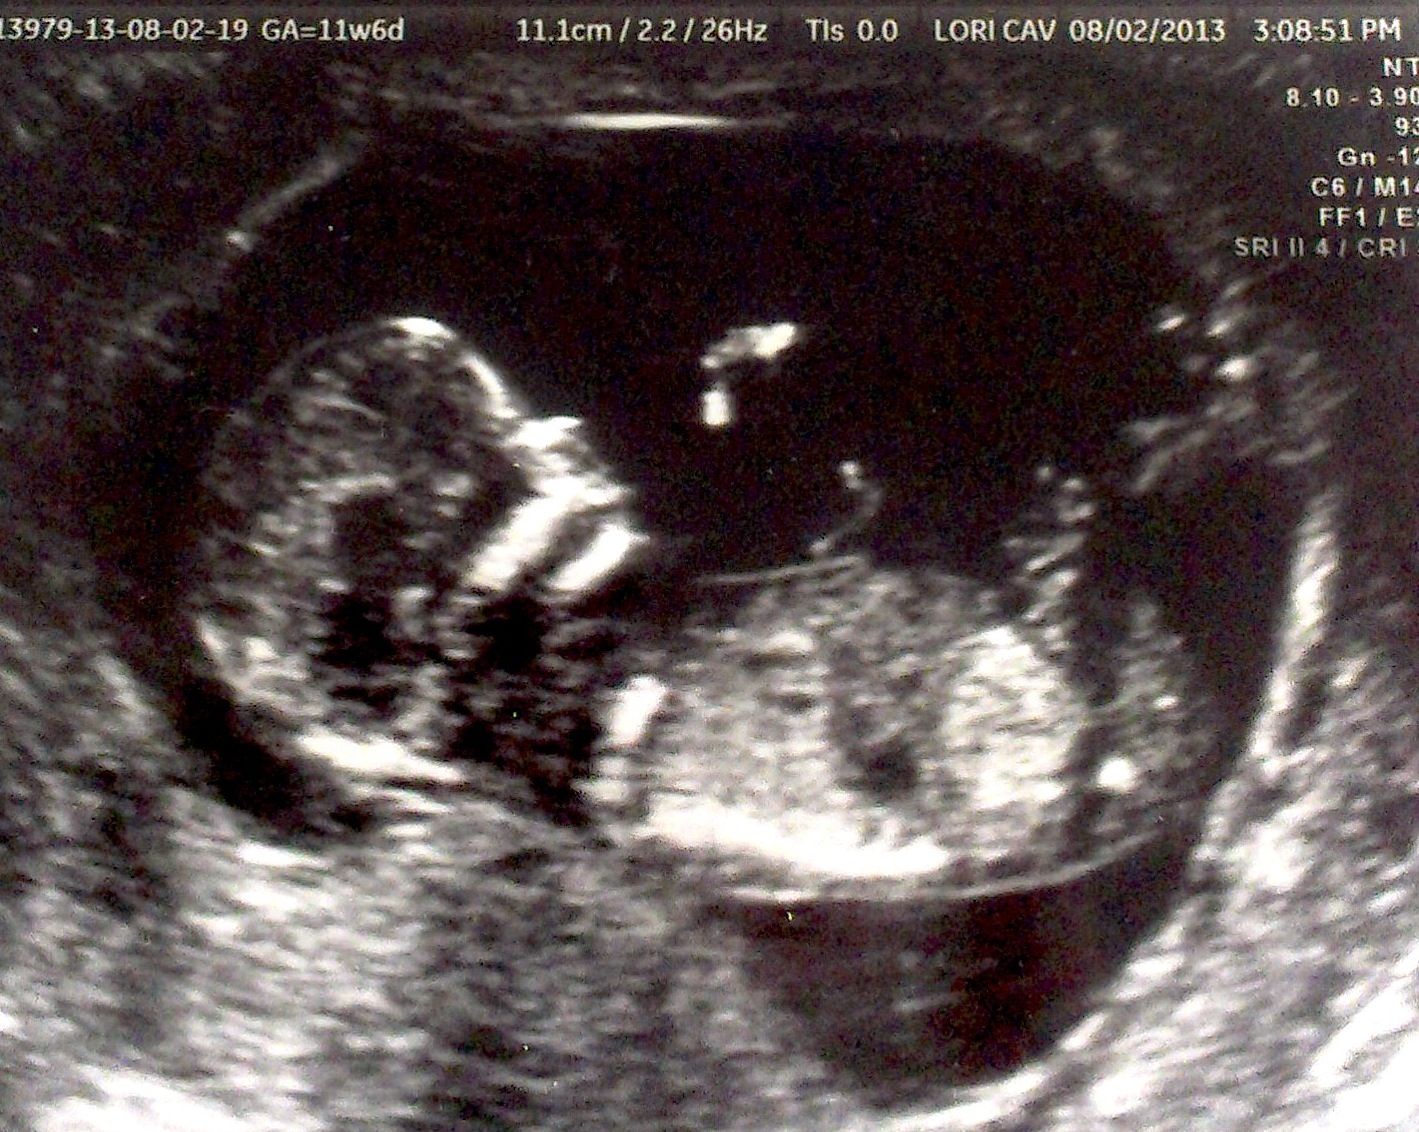 Плод 13 недель беременности фото как выглядит